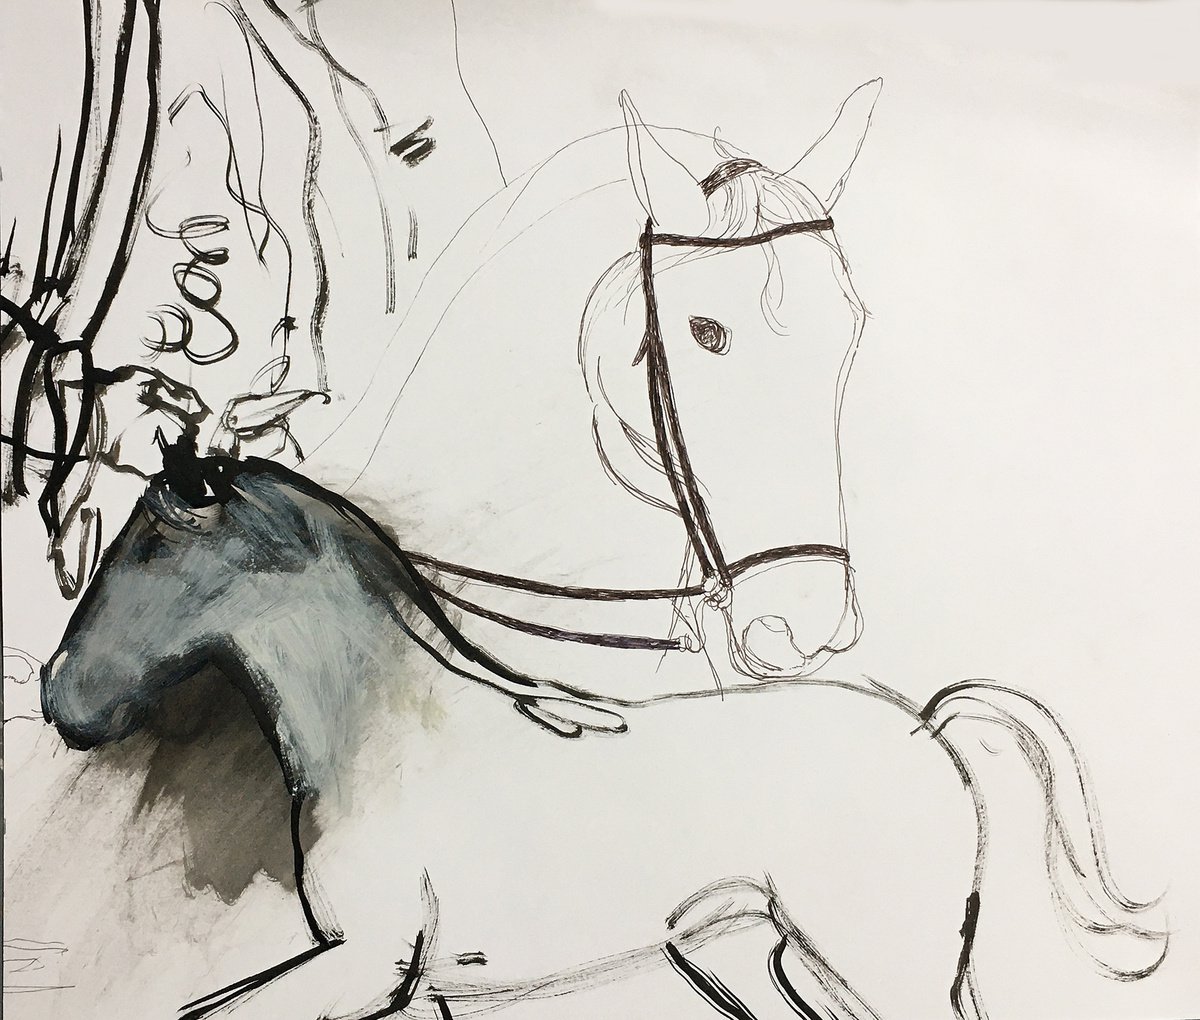 2 horses sketch by Ren Goorman